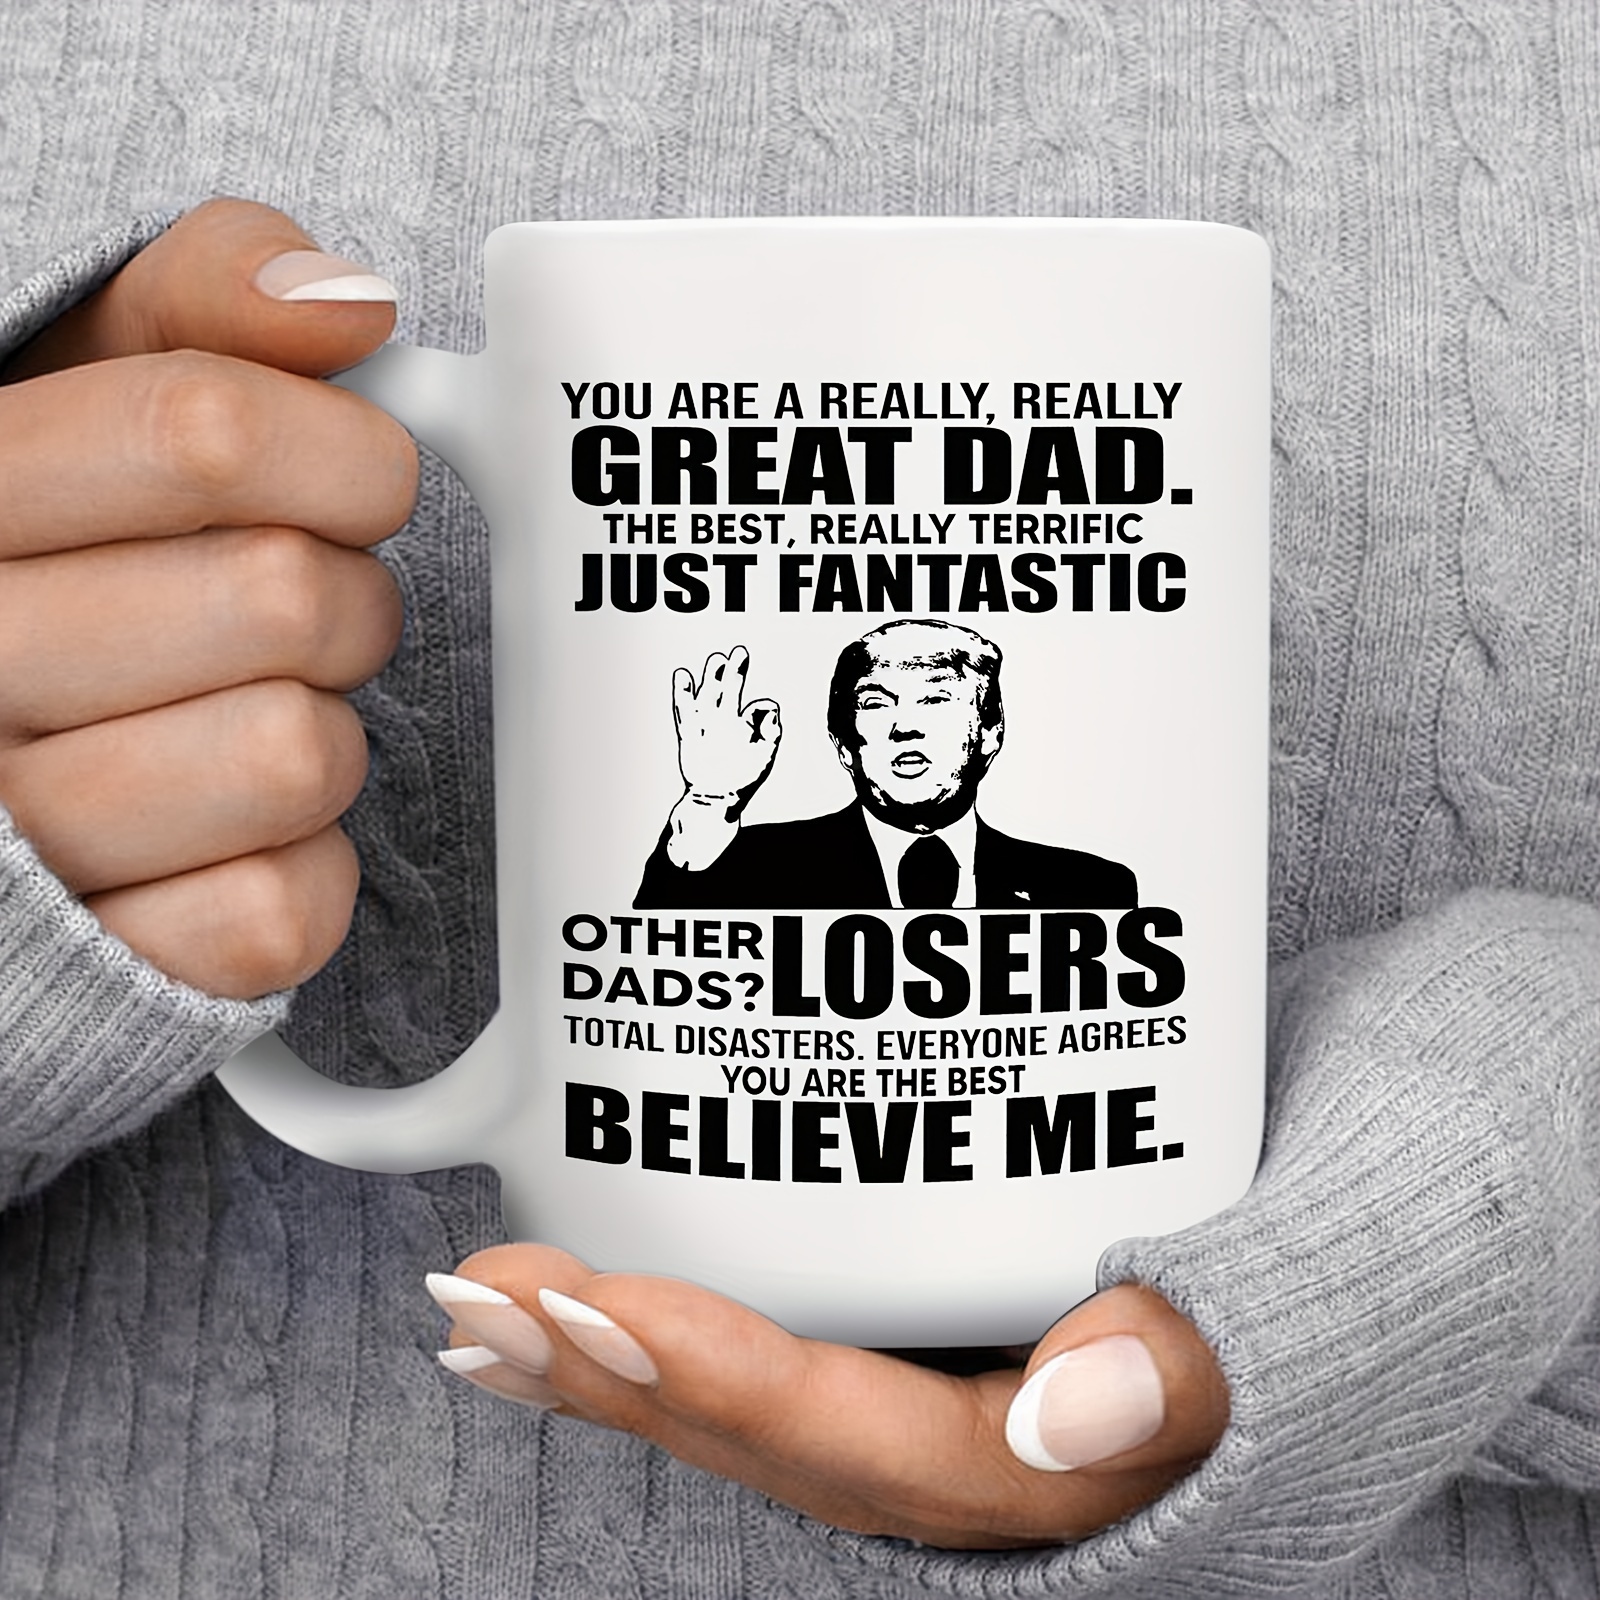 Trump Coffee Mug Dad Christmas Gift – AweBee Designs